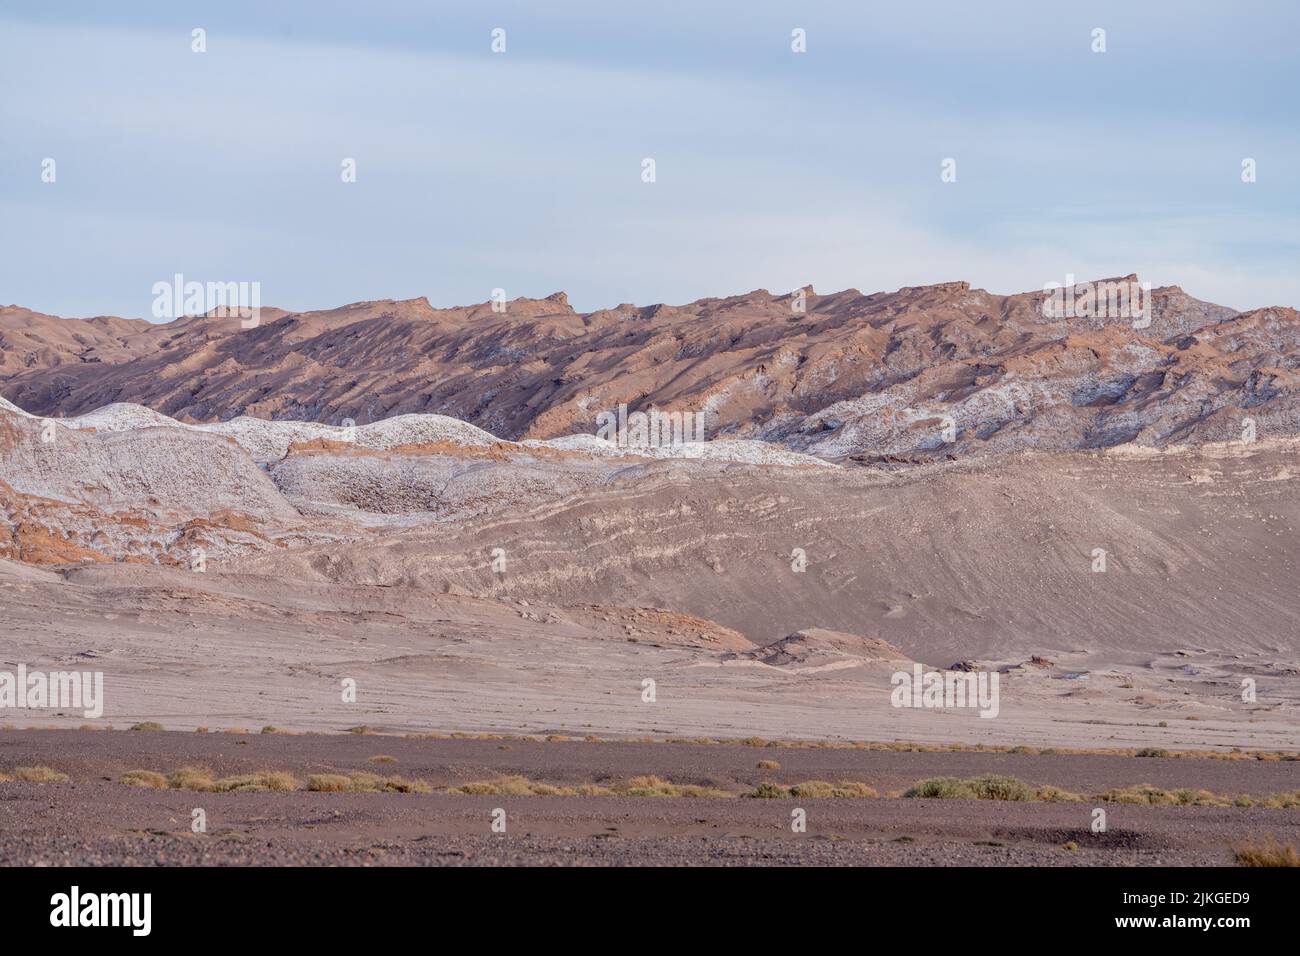 The Salt Mountains in the Valley of the Moon or Valle de la Luna in the Atacama Desert, San Pedro de Atacama, Chile. Stock Photo